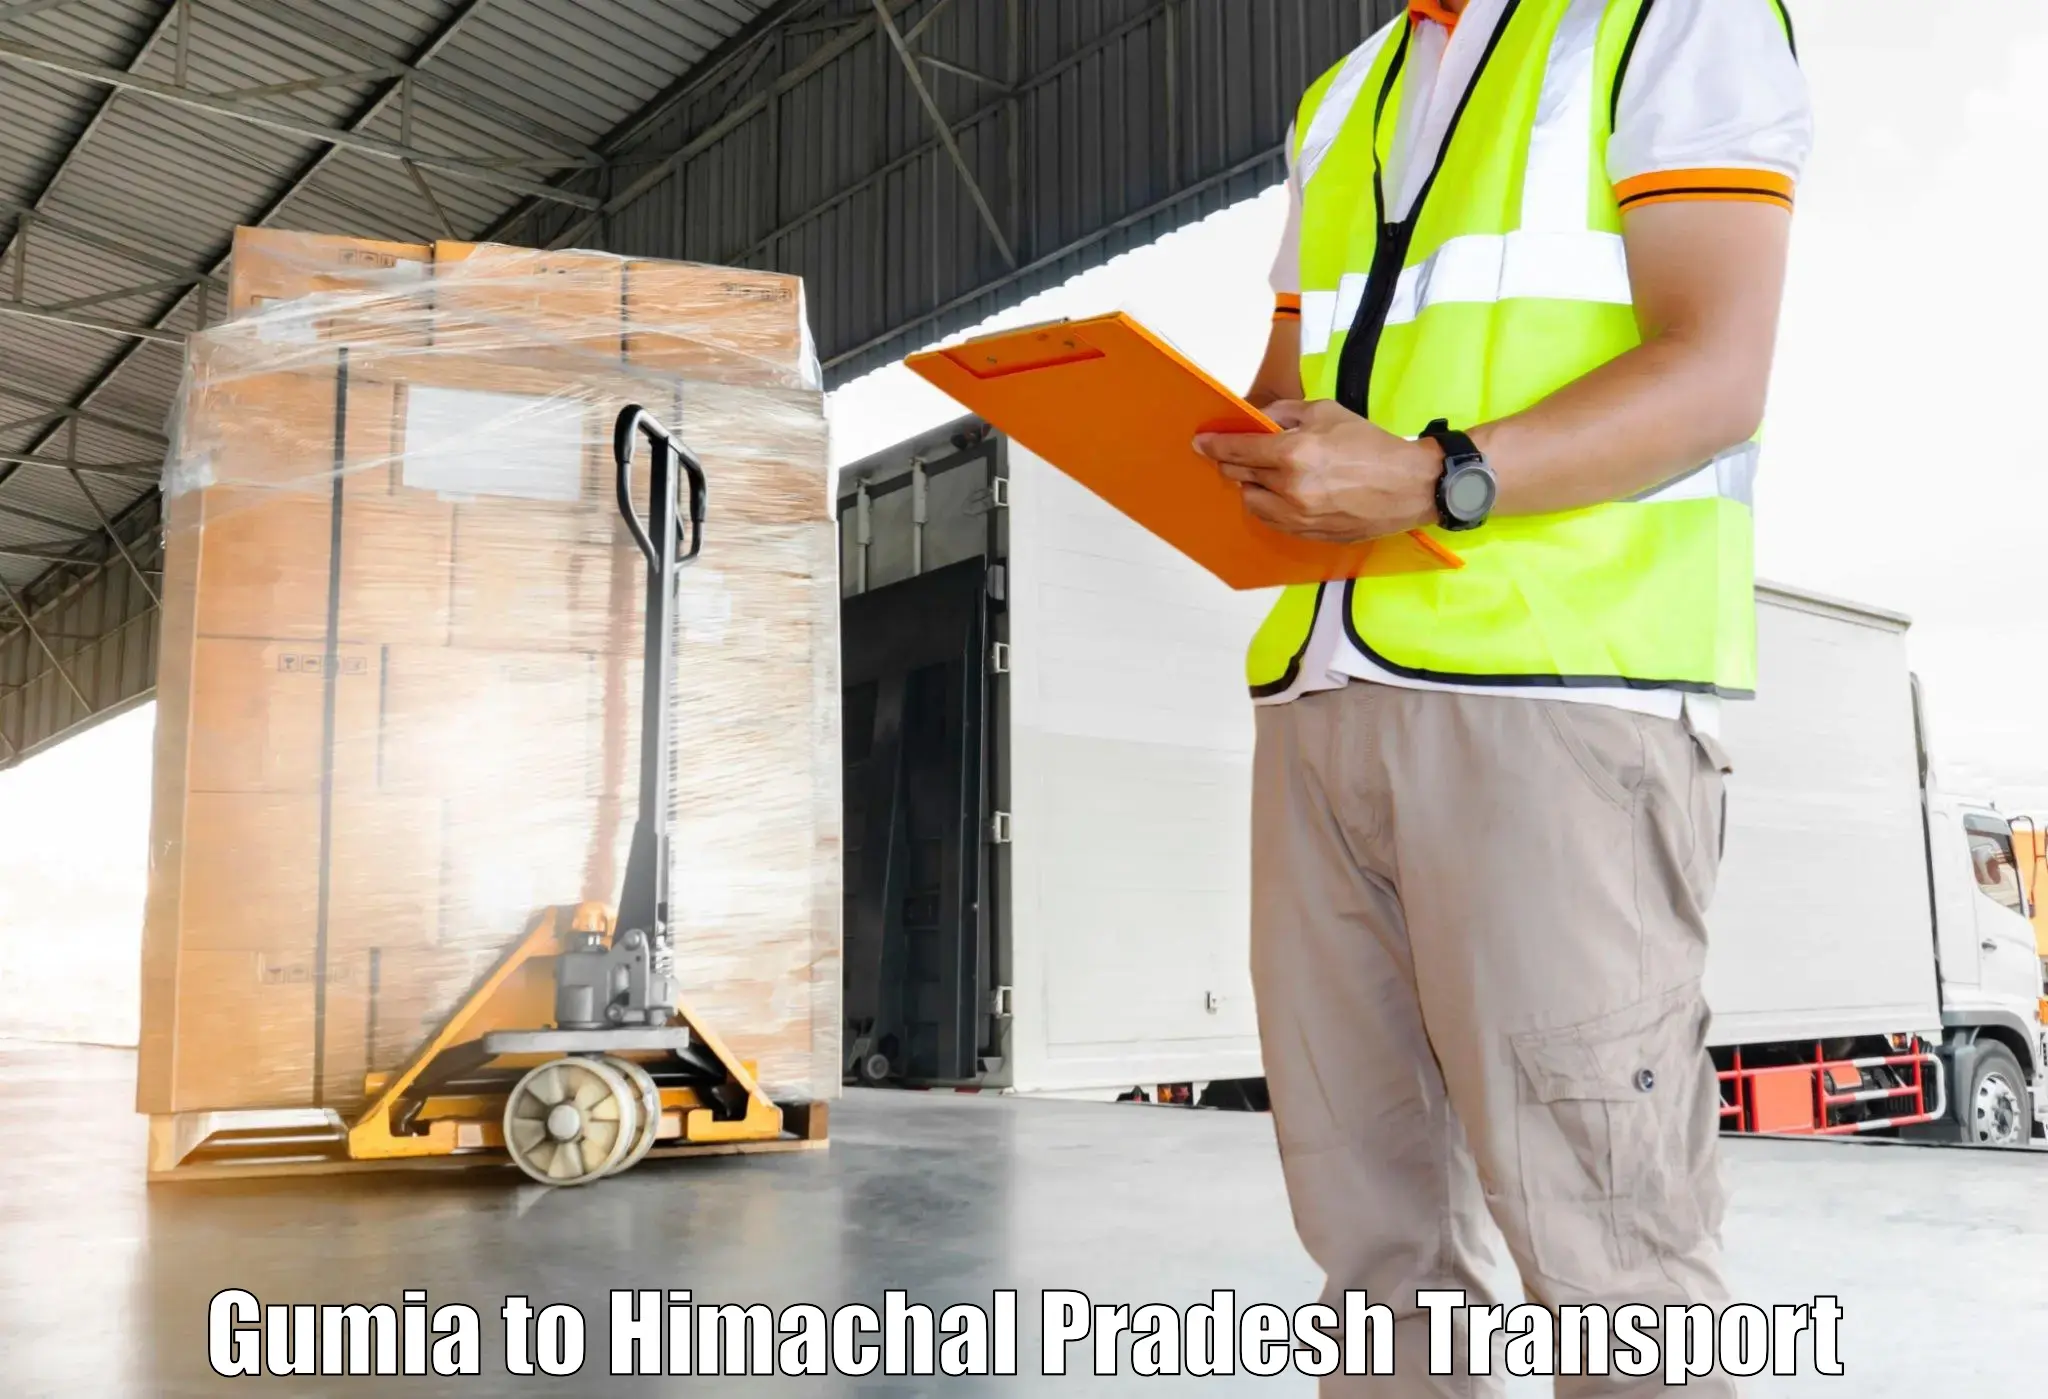 Furniture transport service Gumia to Jahu